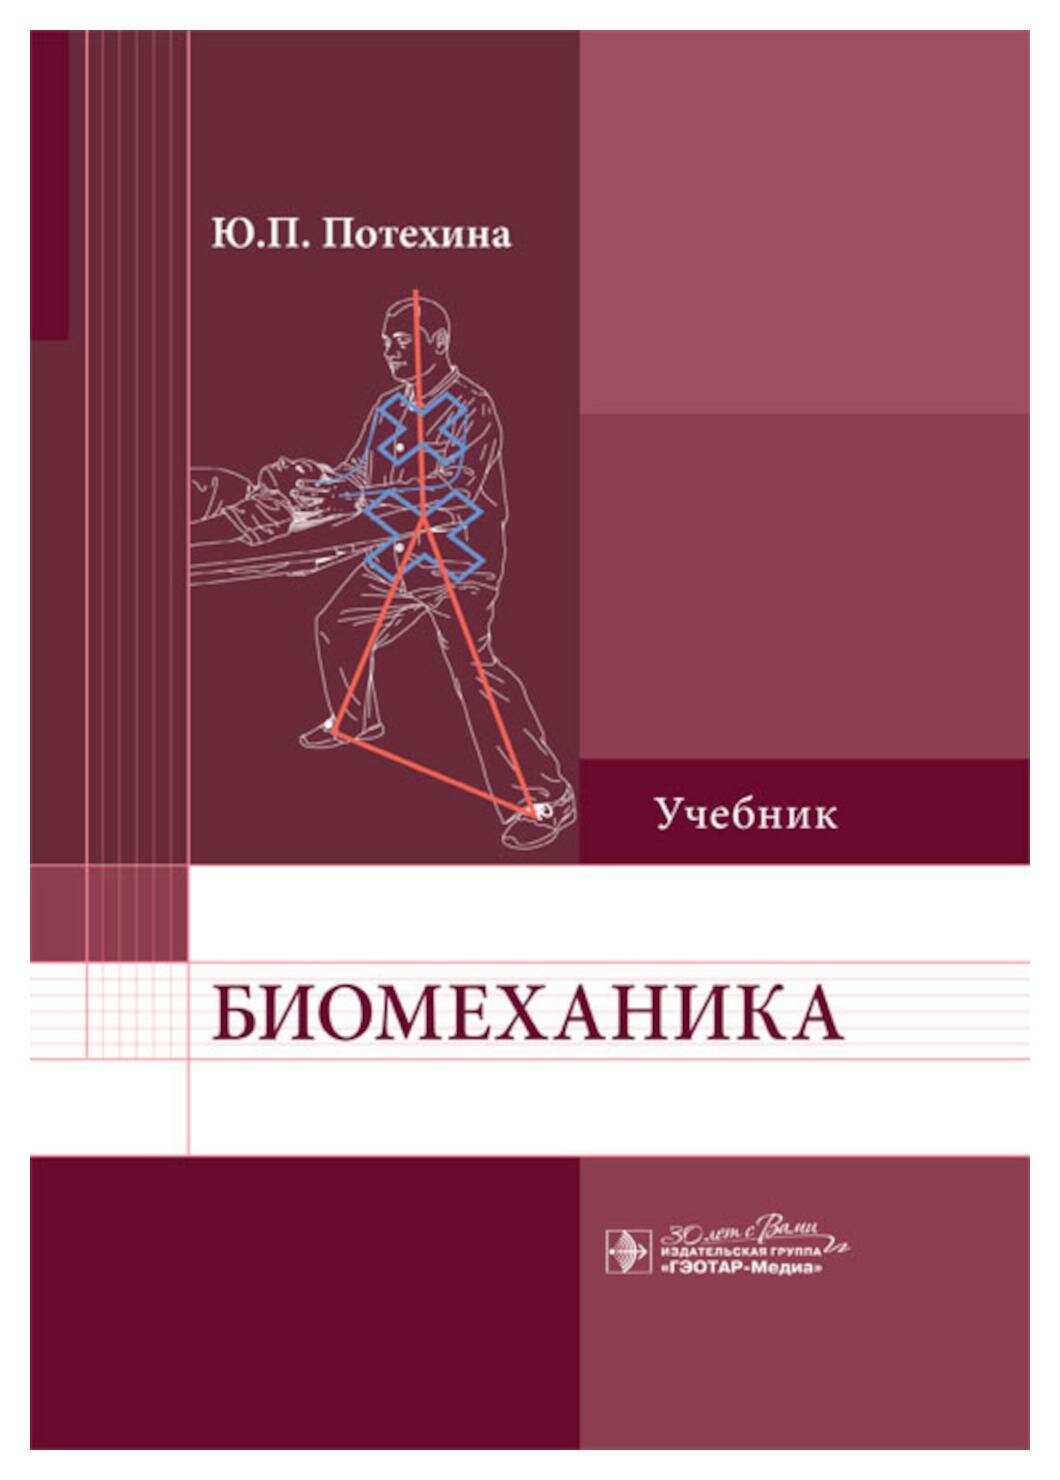 Биомеханика: учебник. Потехина Ю. П. гэотар-медиа